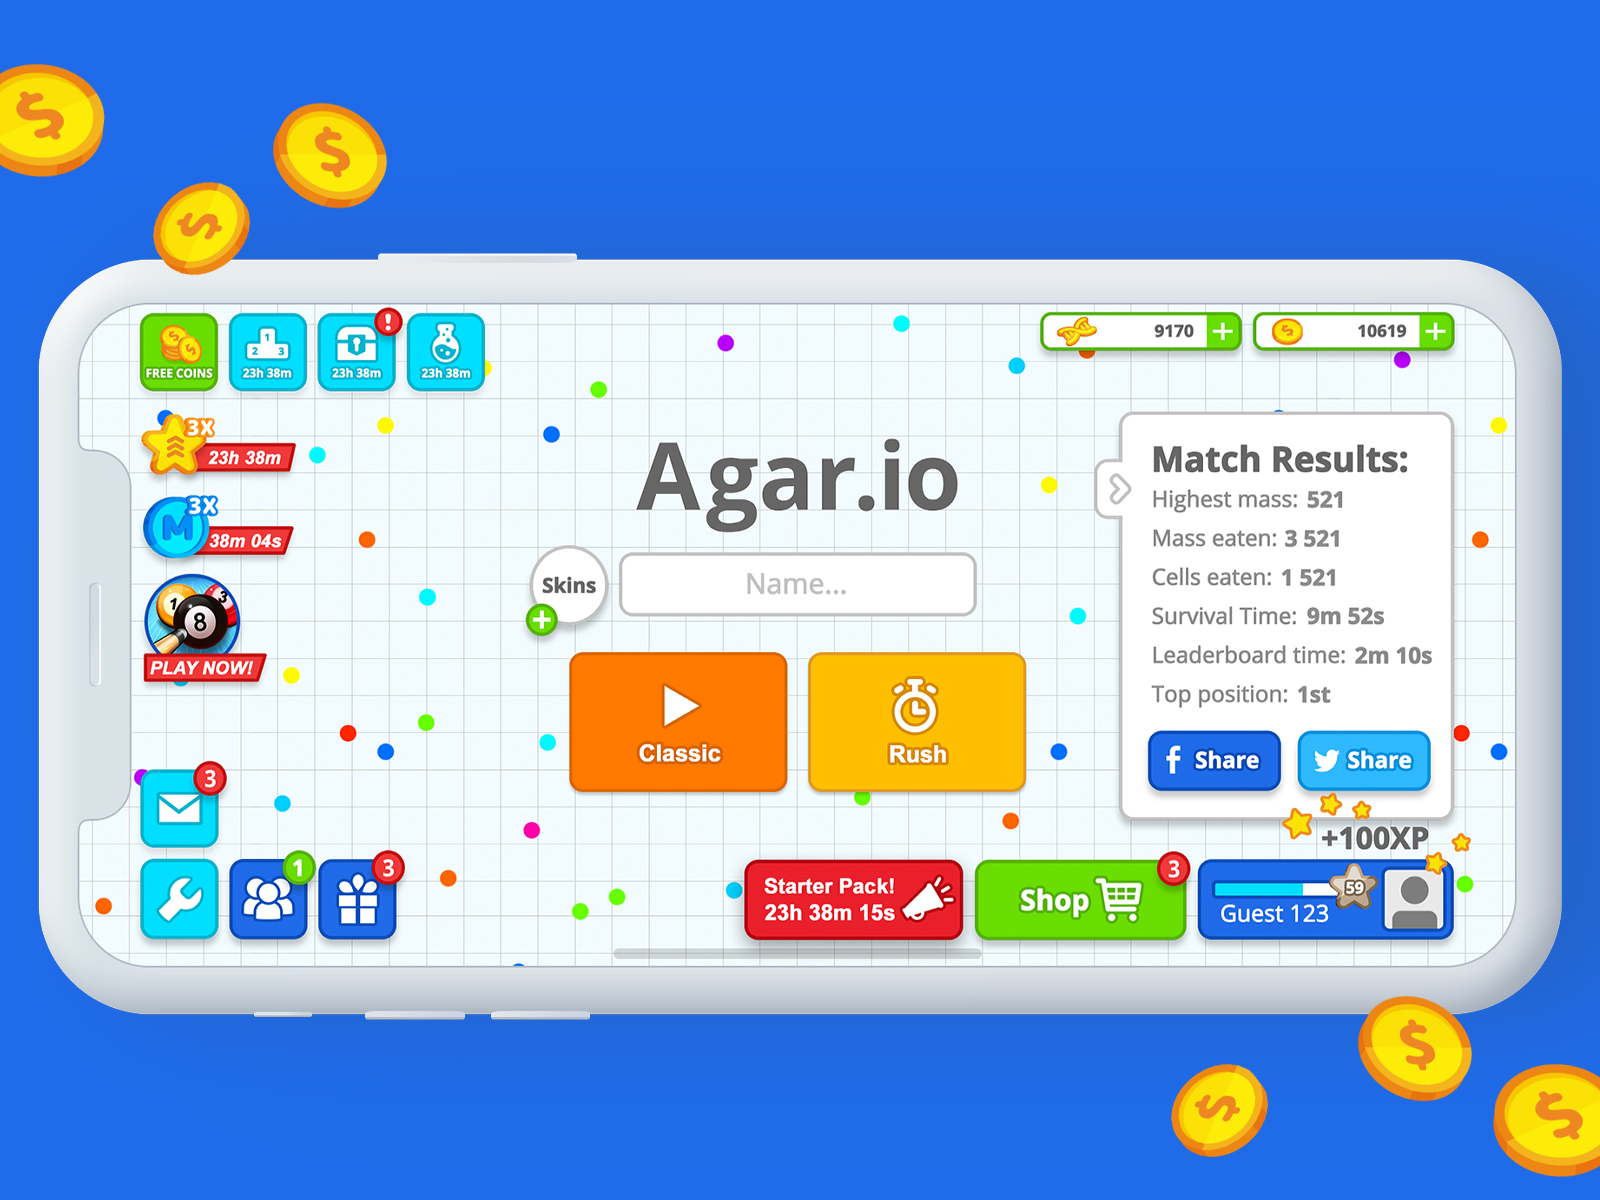 AGARIO MOBILE SOLO 76K (Agar.io Mobile Gameplay) 